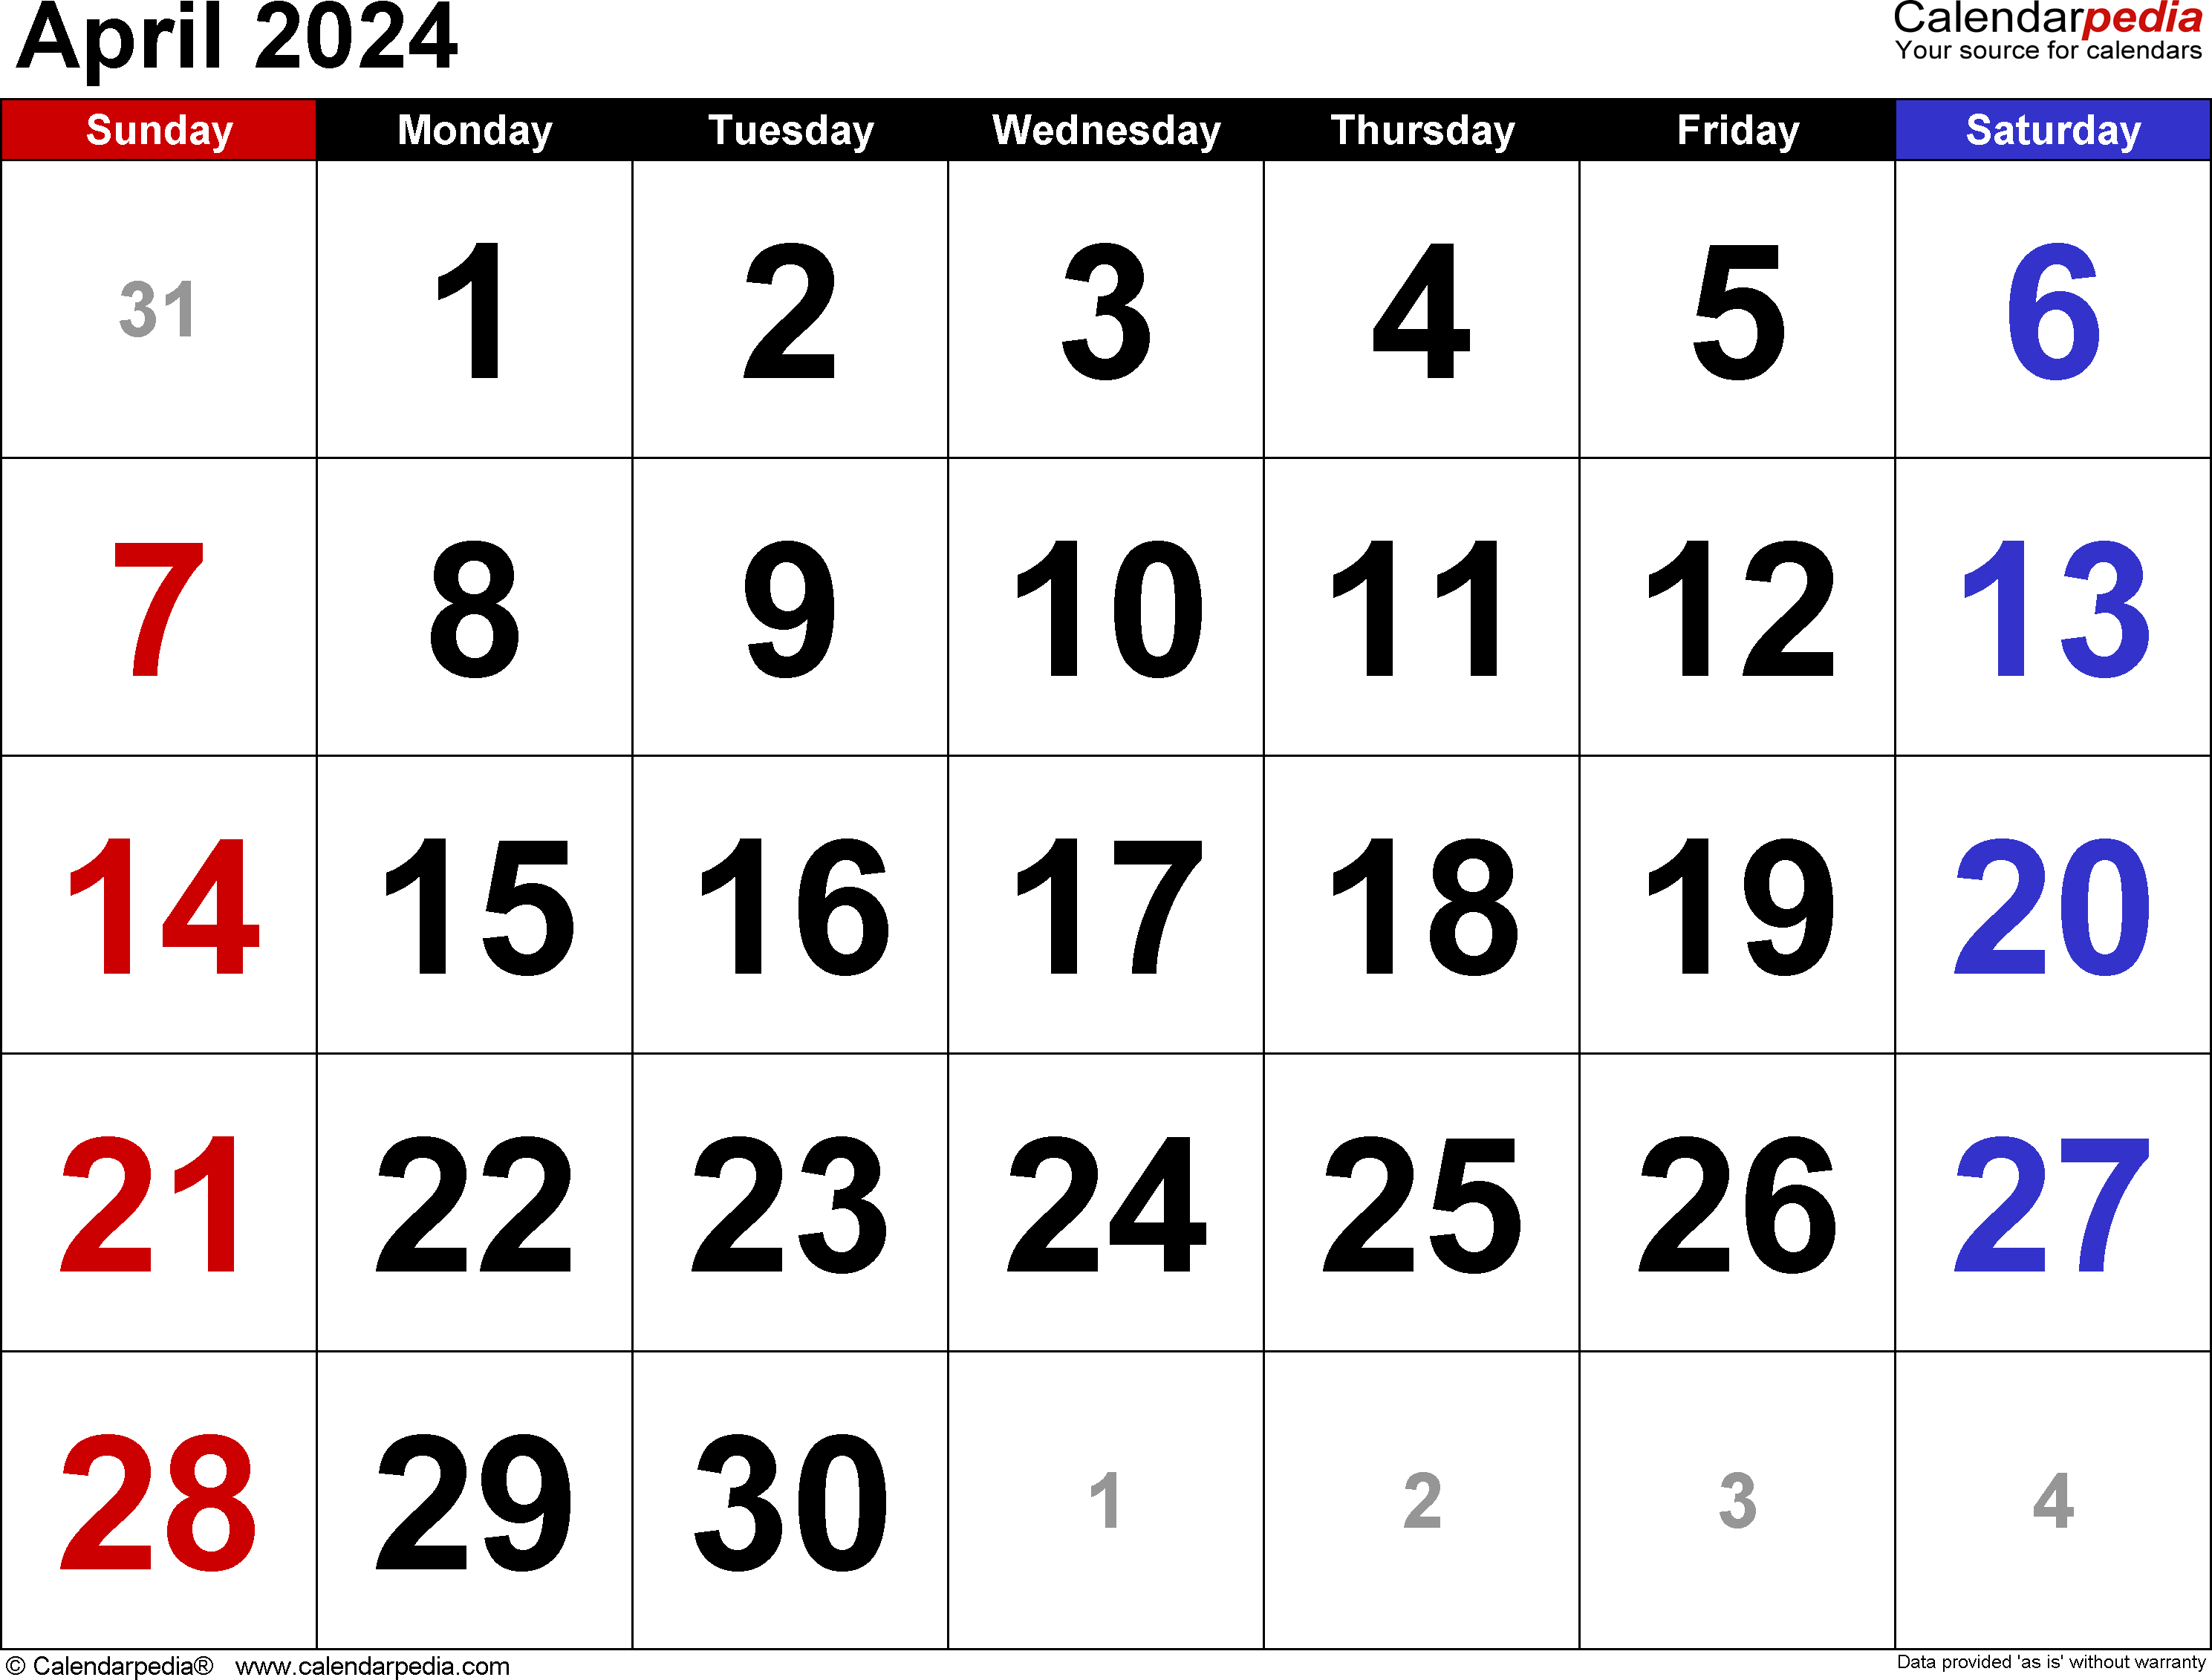 April 2024 Calendar | Templates For Word, Excel And Pdf regarding Show Me A Calendar For April 2024